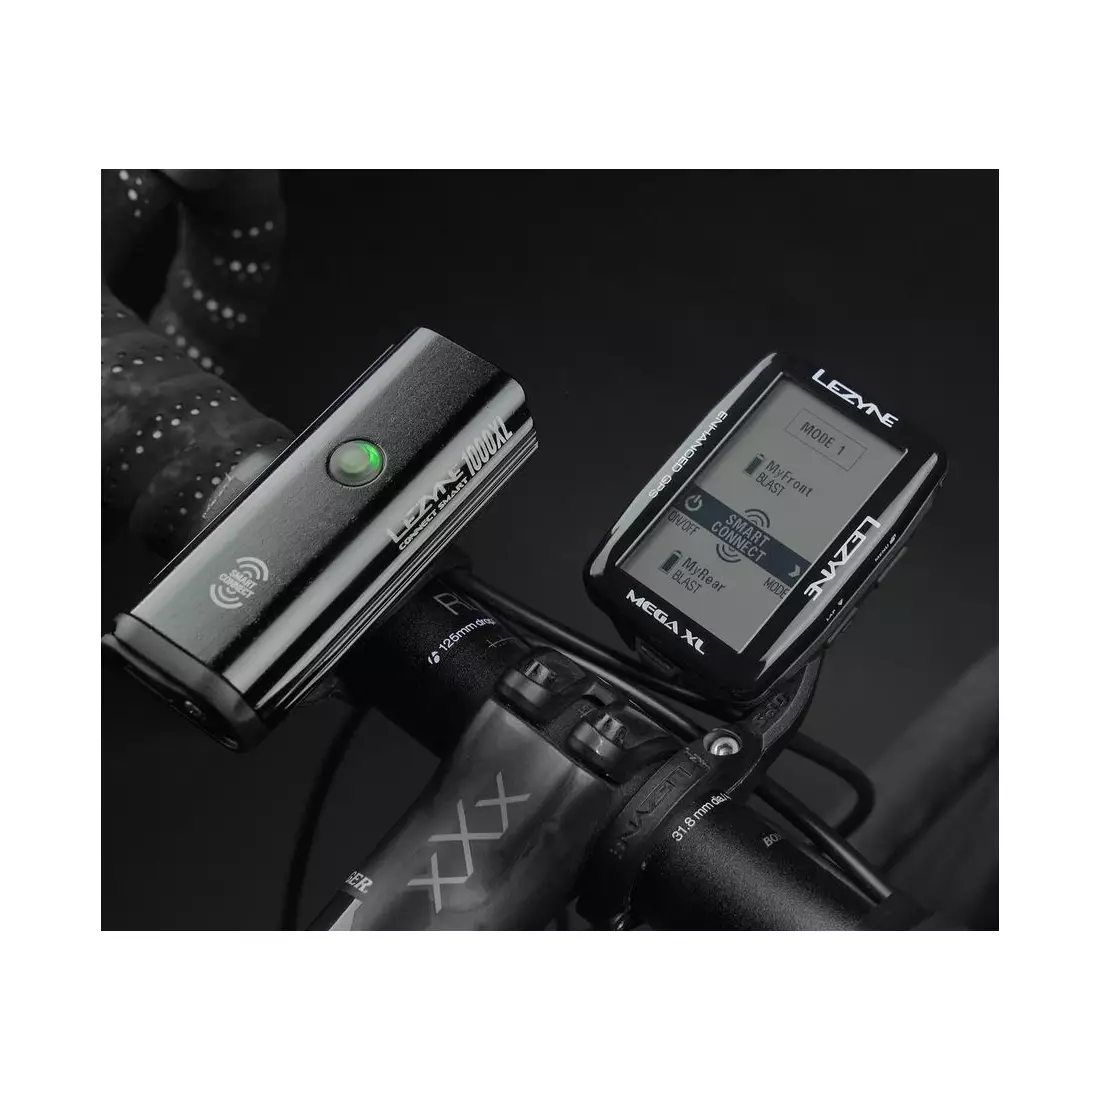 Contor de biciclete LEZYNE MEGA XL GPS HRSC Loaded (bandă cardiacă + senzor de viteză/cadență inclus) 